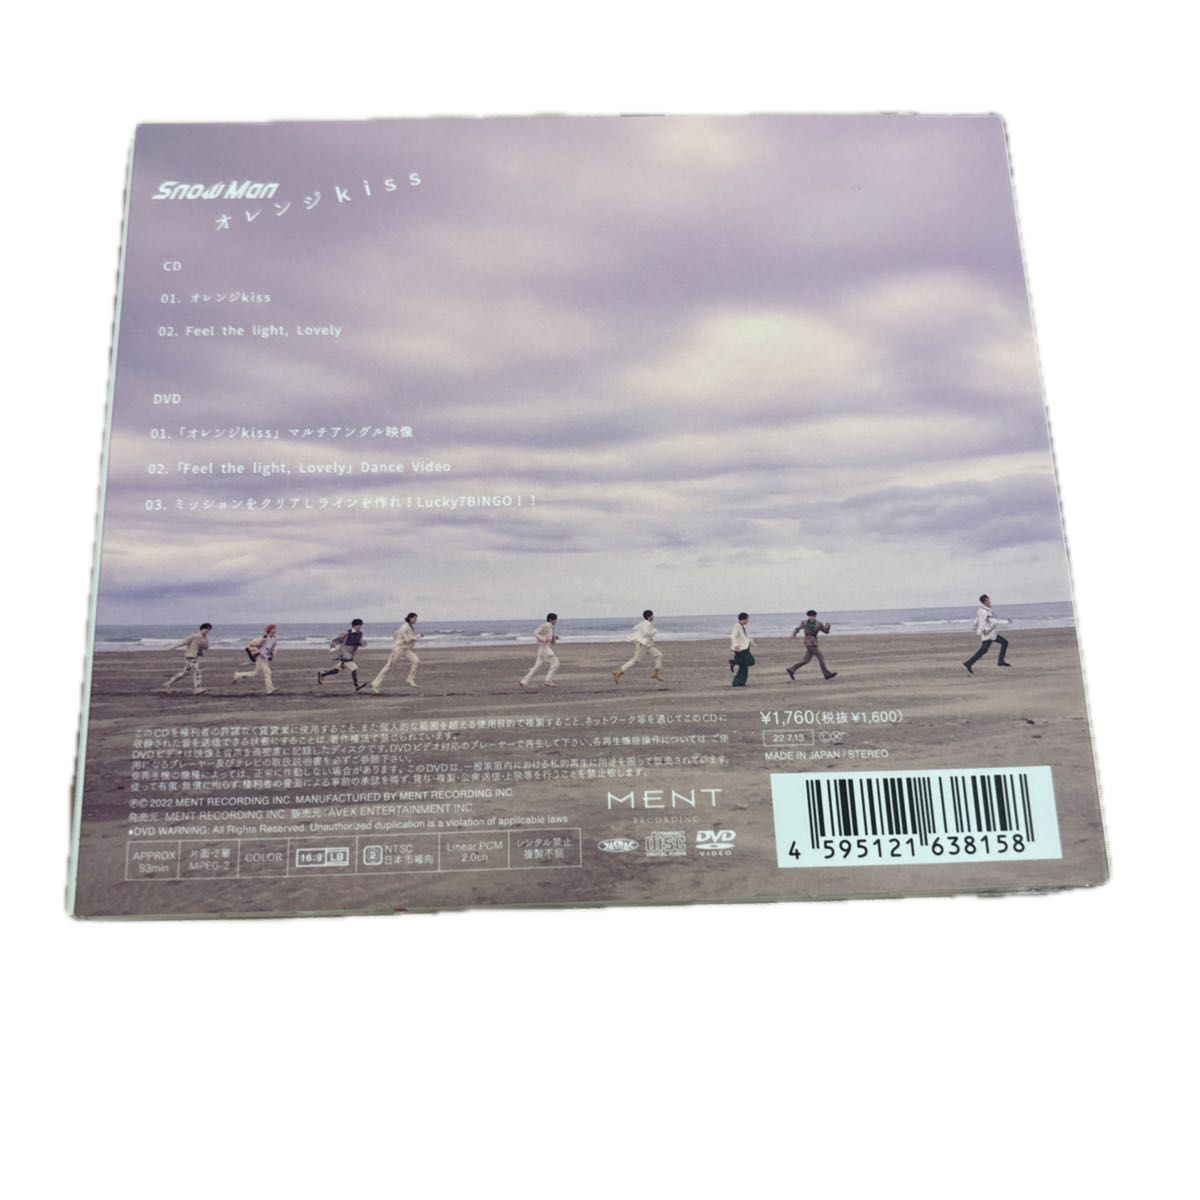 オレンジkiss (CD+DVD) (初回盤B)